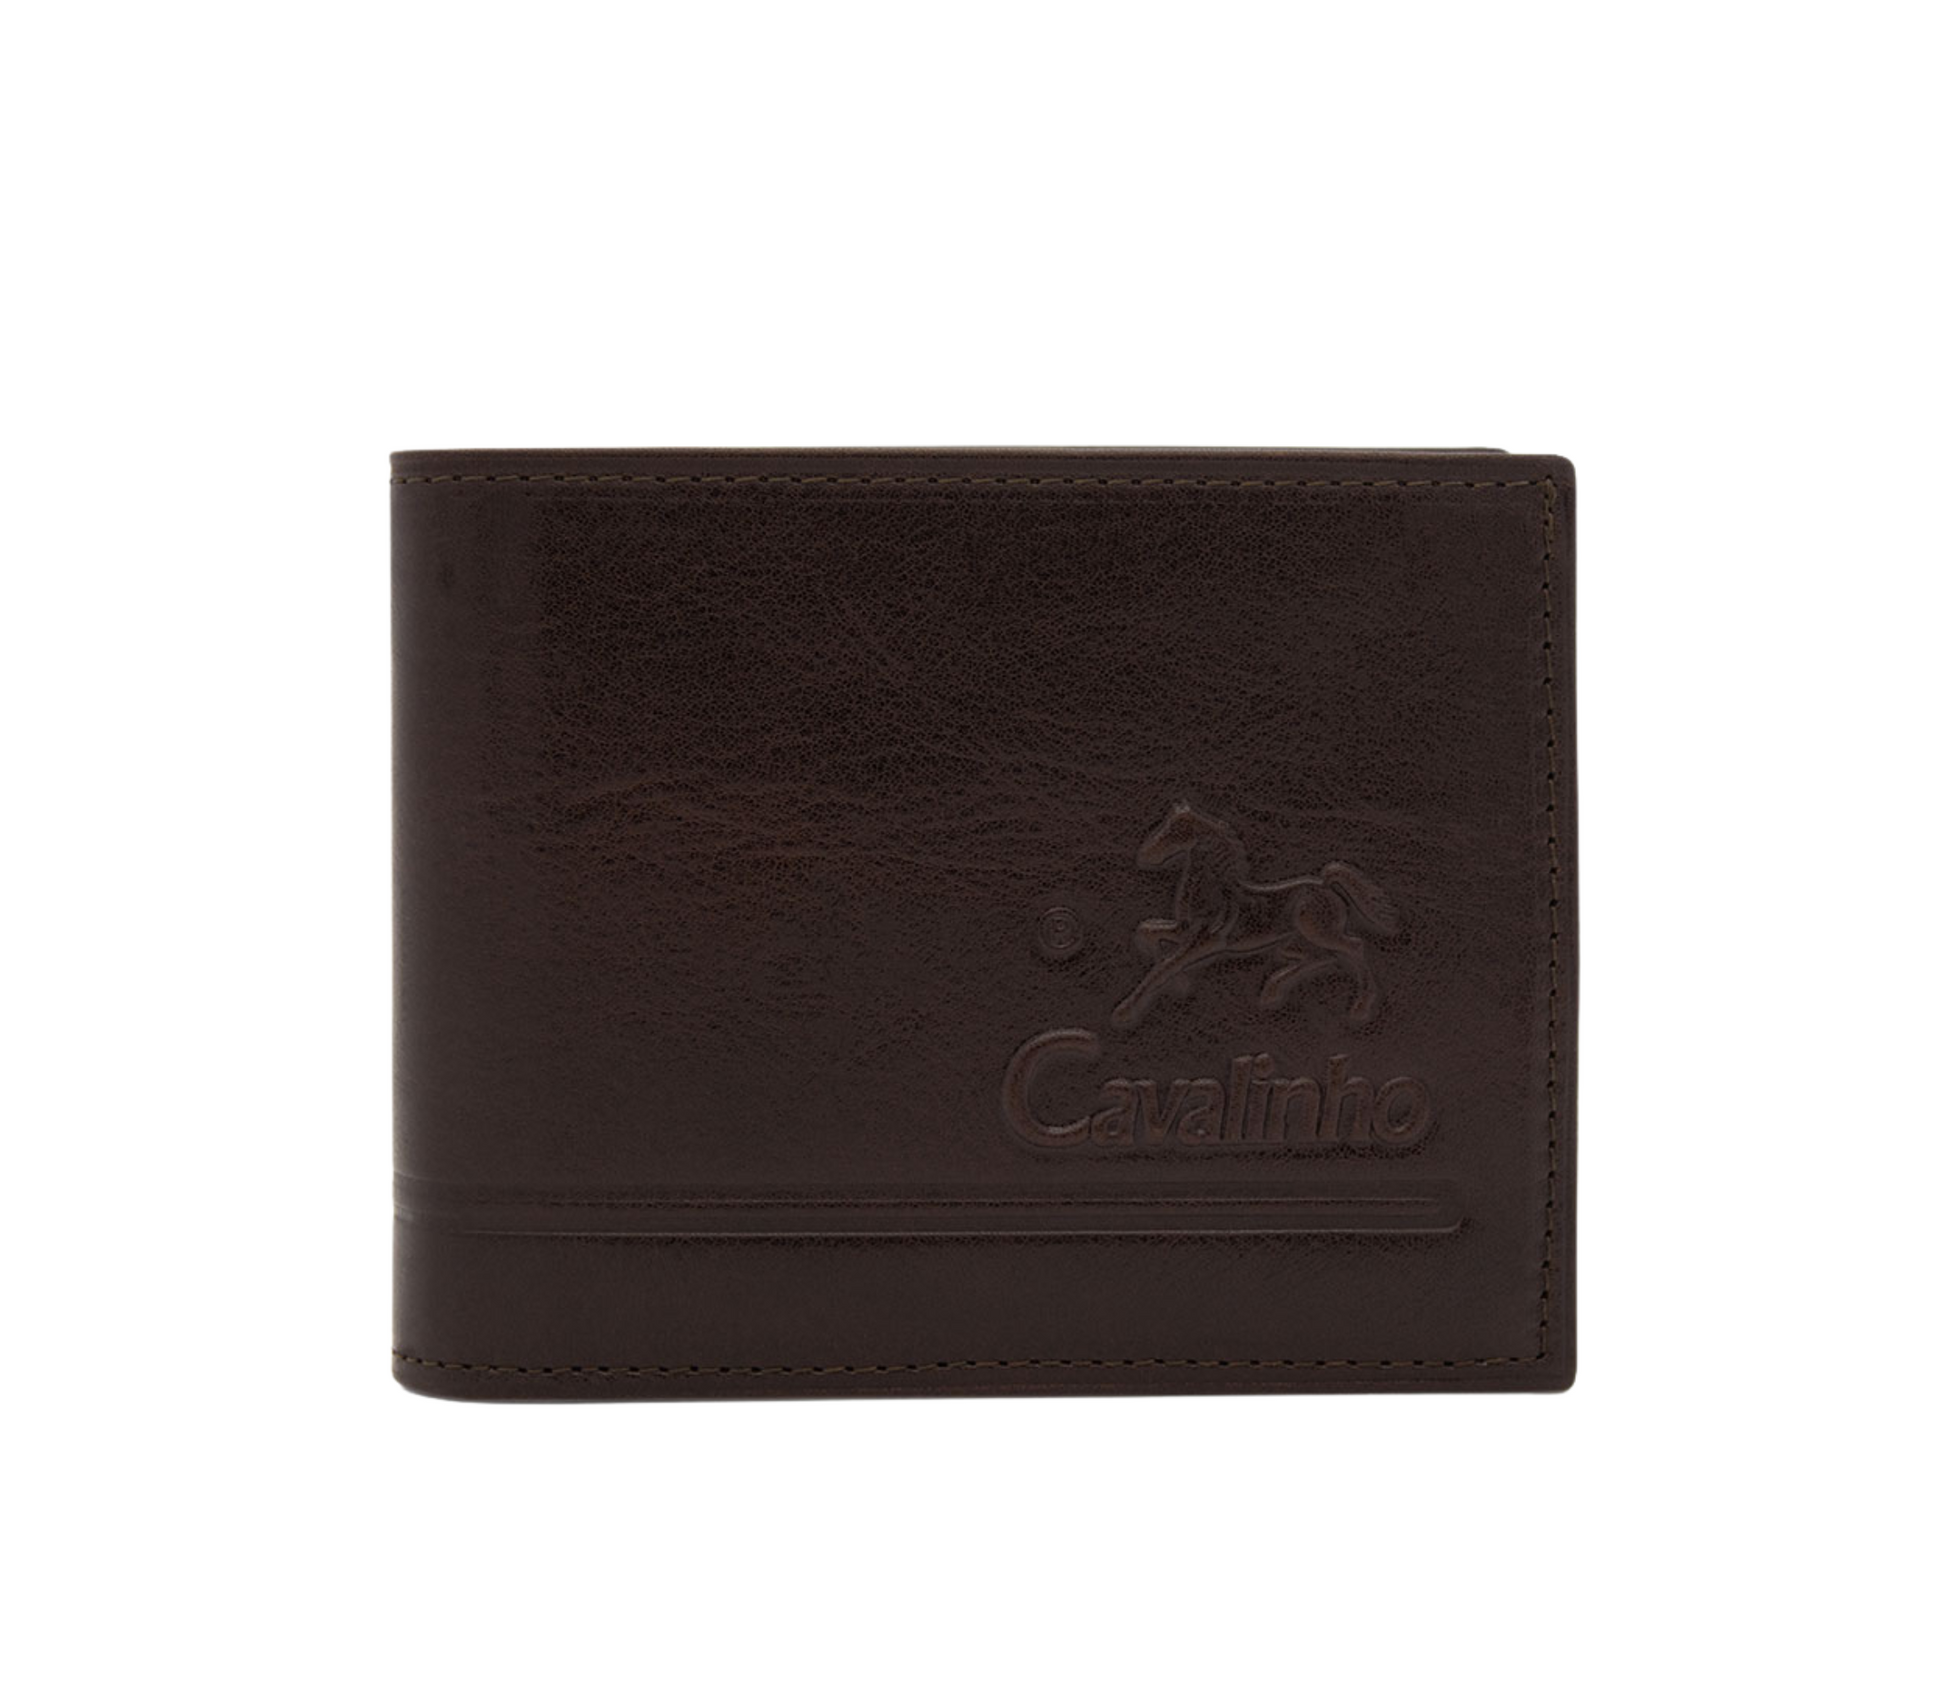 Cavalinho Men's Bifold Leather Wallet - Brown - 28610512.02_P01